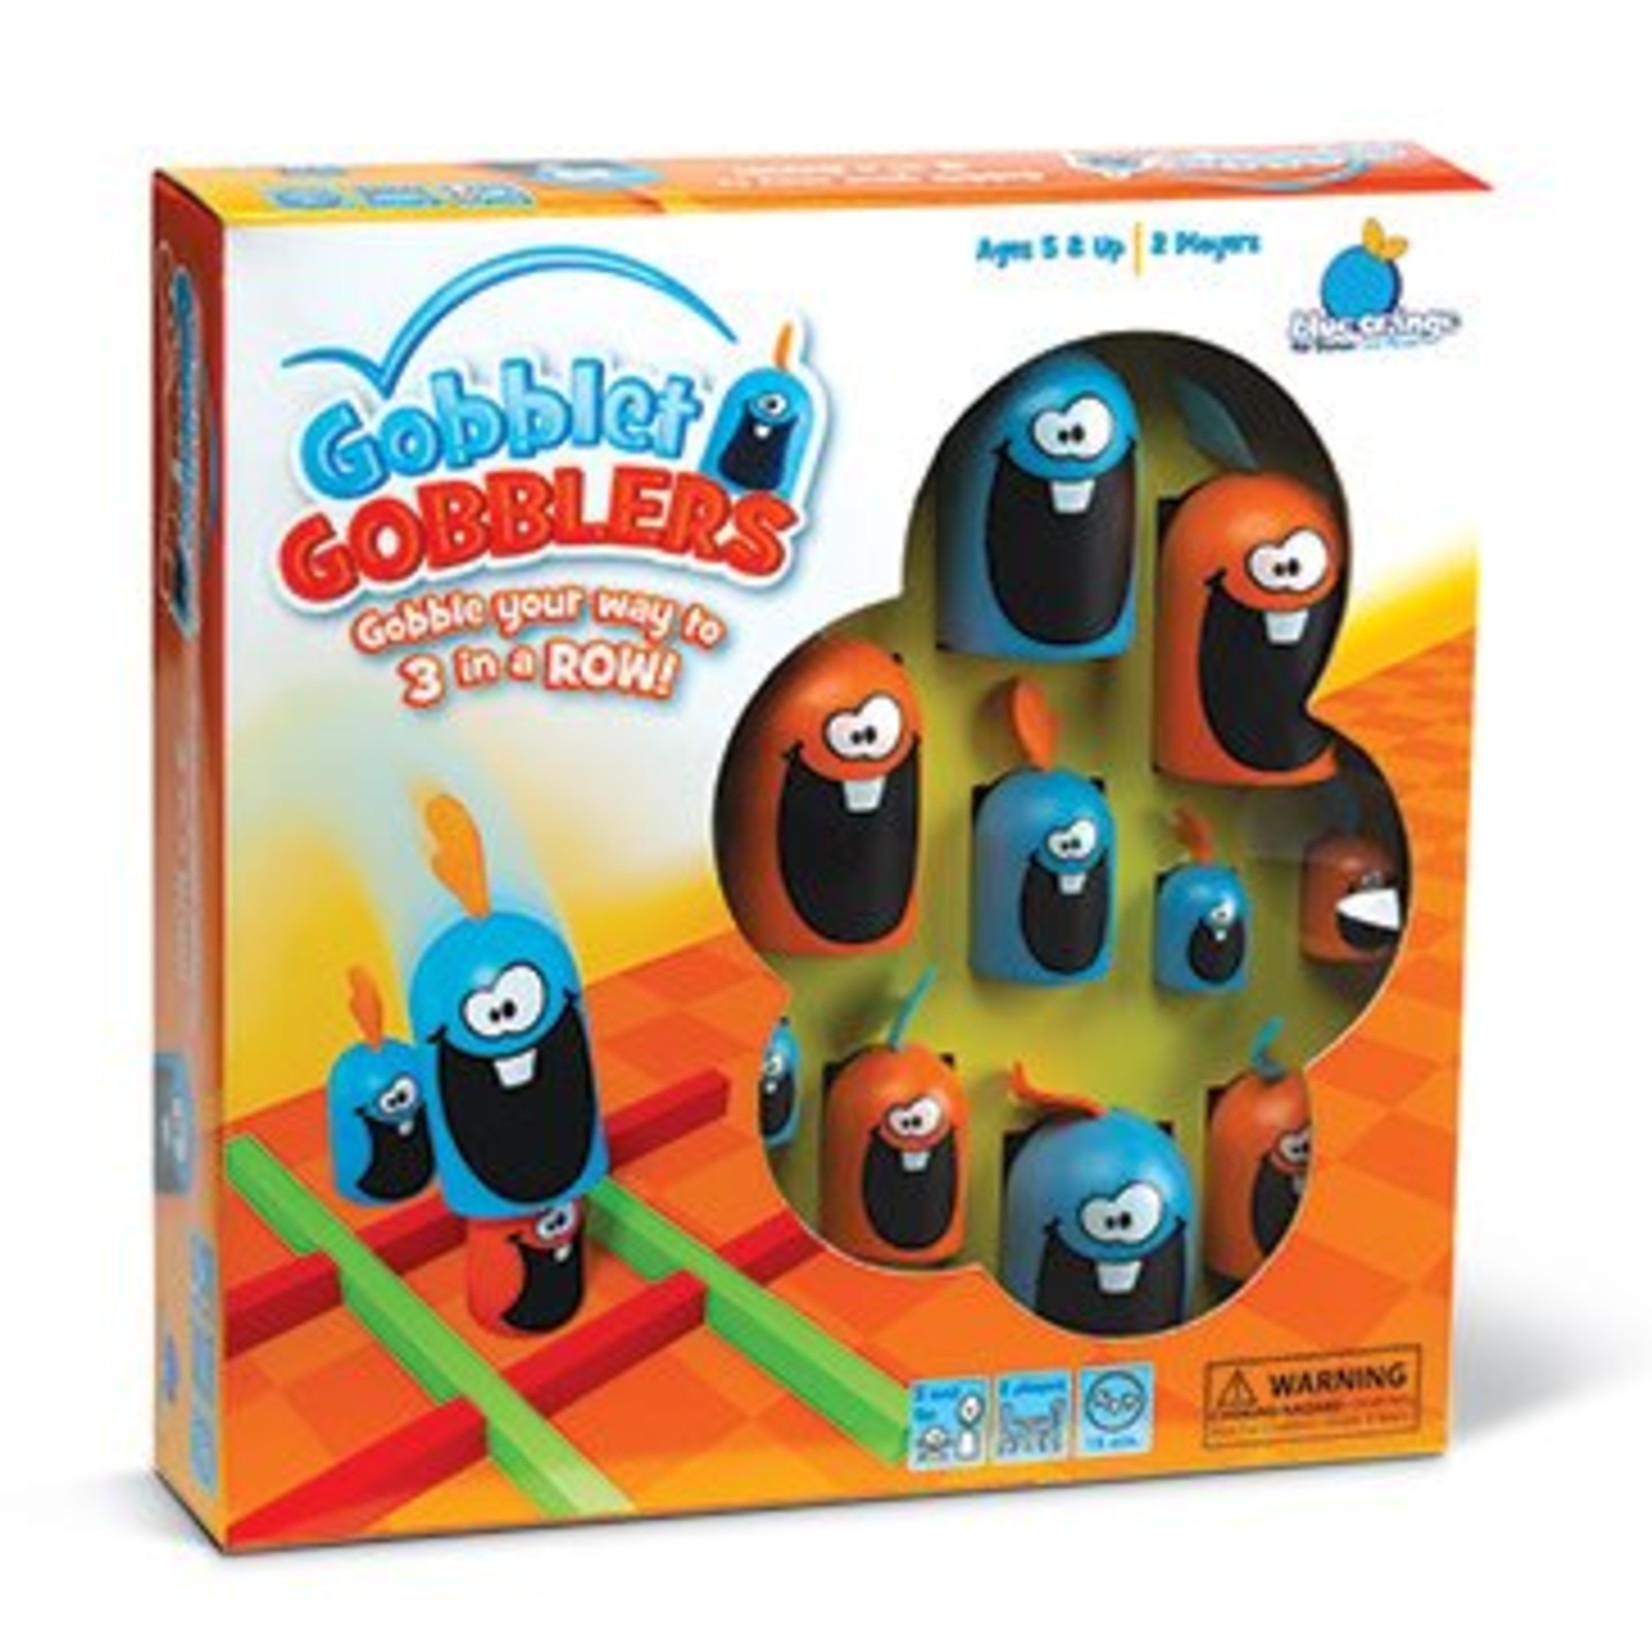 Blue Orange Games Gobblet Gobblers (Plastic)